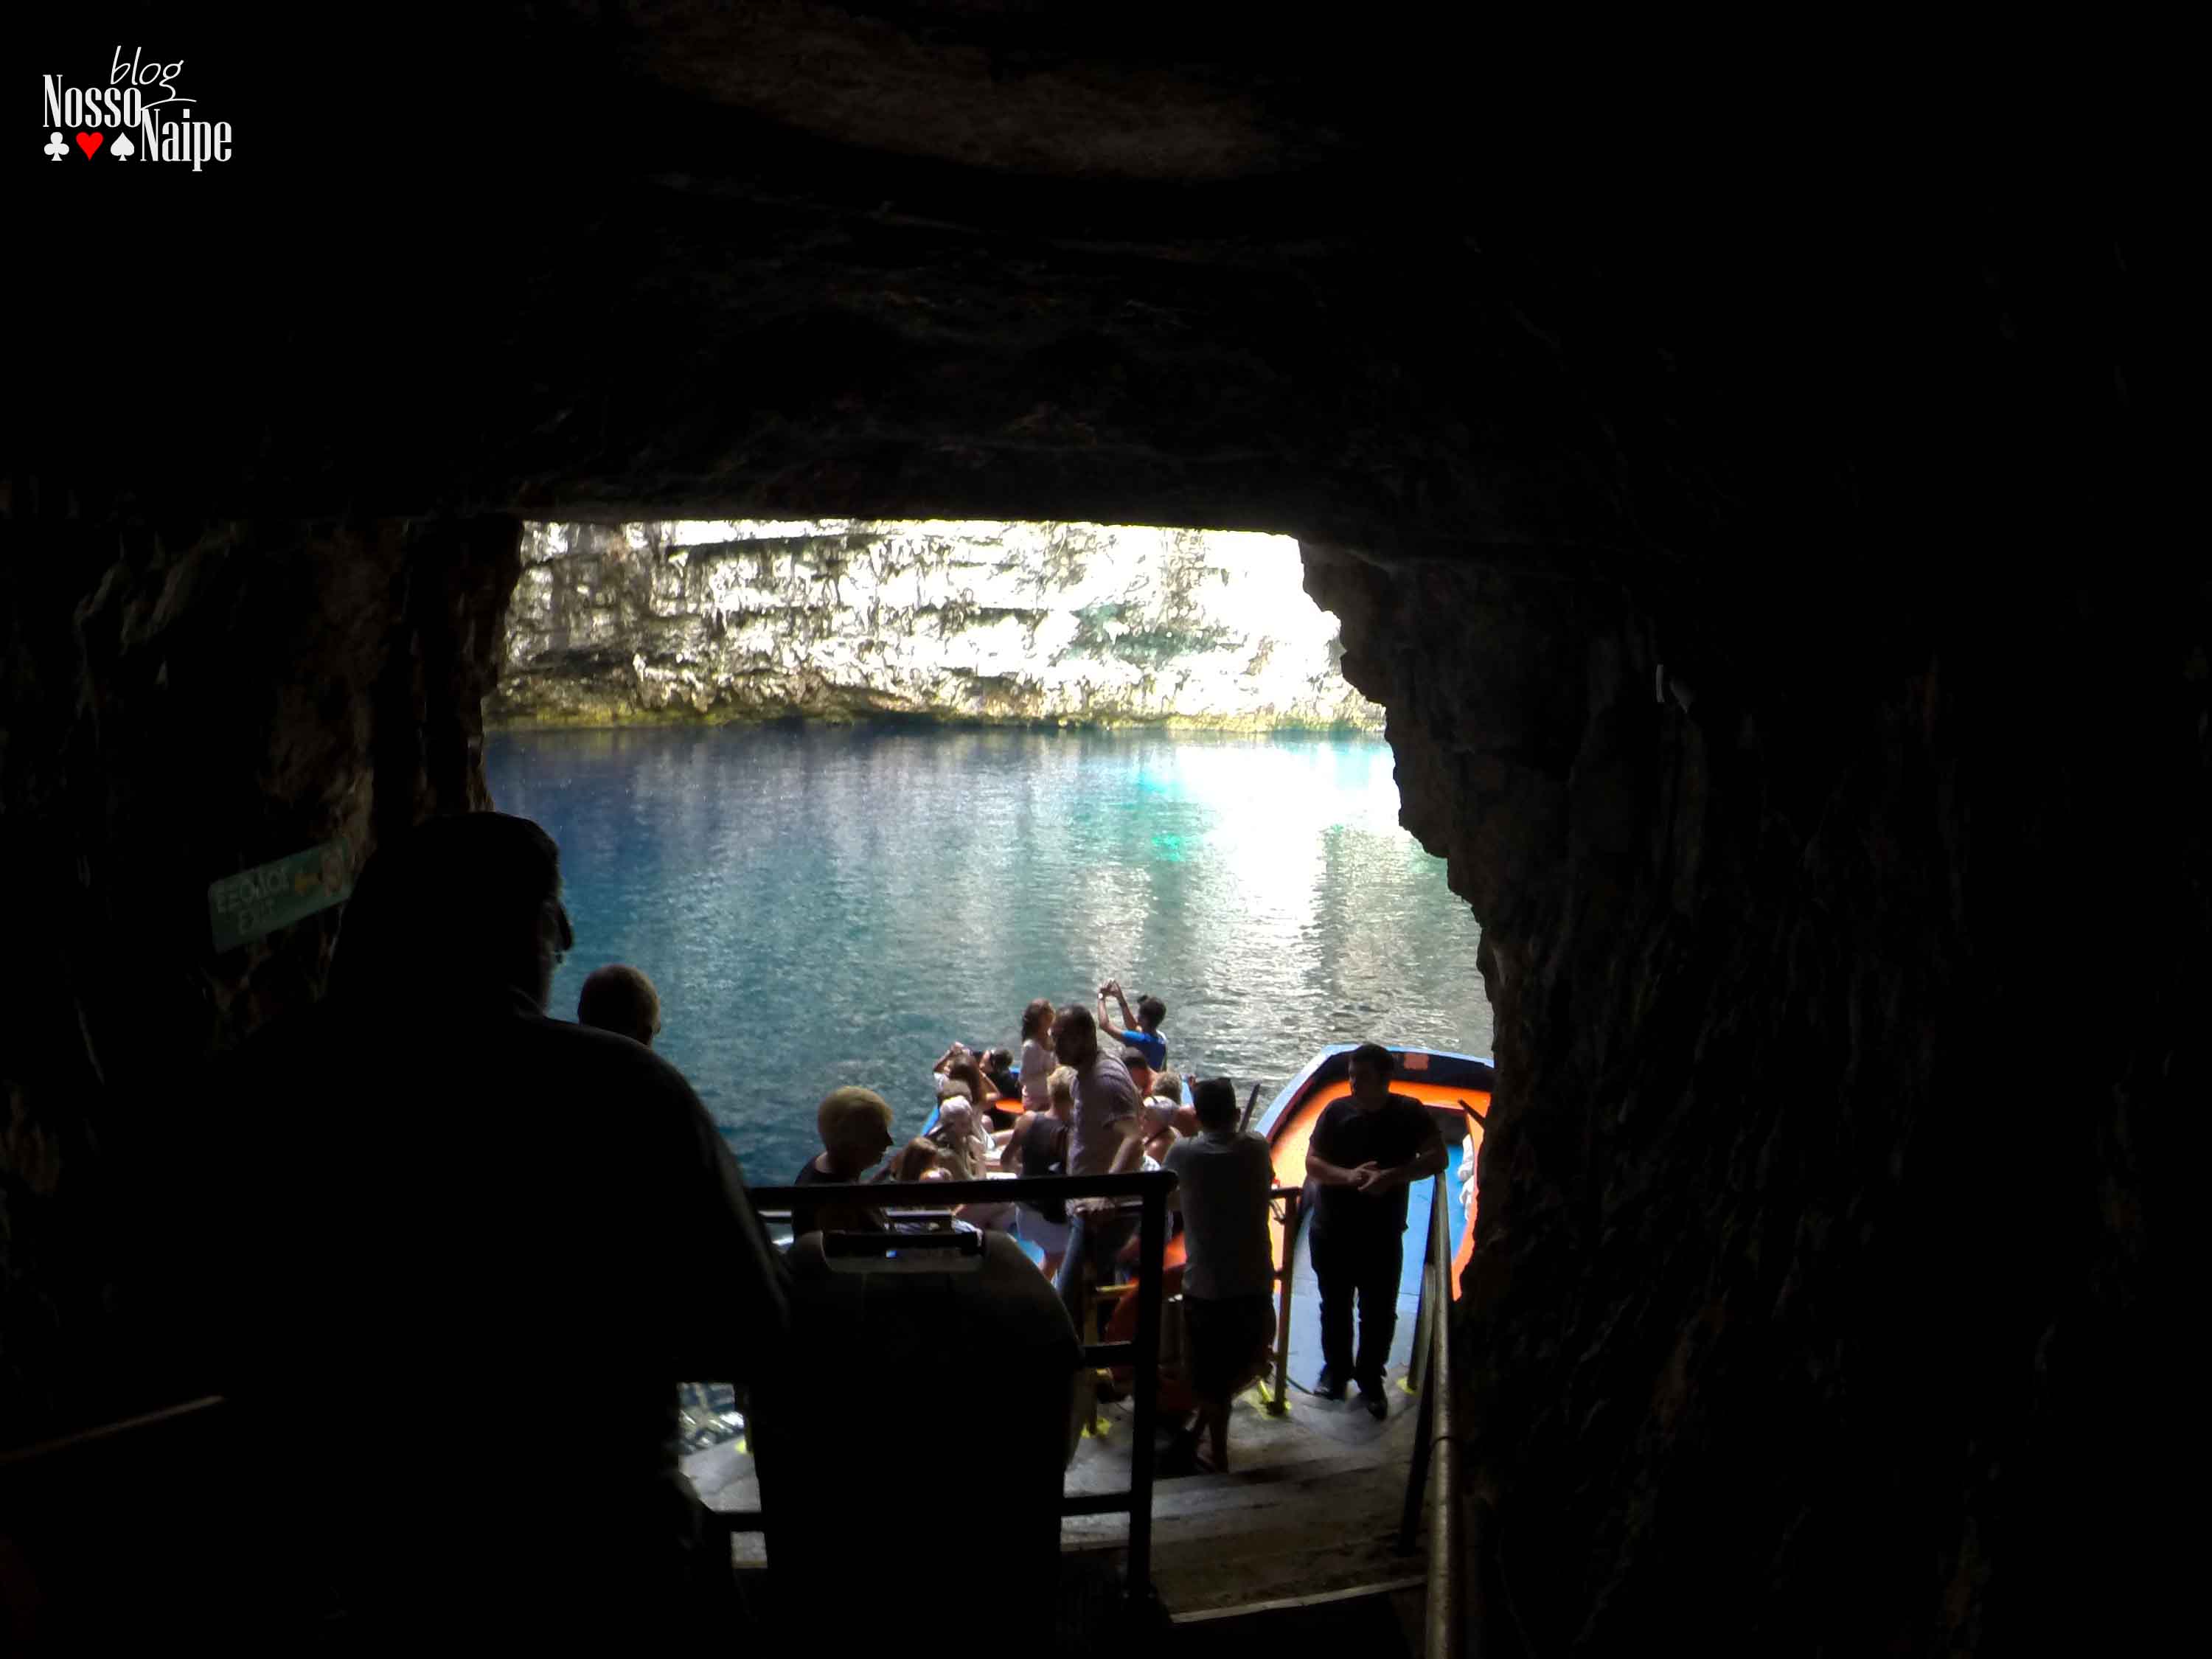 O passeio pelo Melissani Lake é feito de barco. Você entra por um túnel subterrâneo e vai até a margem do lago, onde ficam os barcos. O passeio é guiado e, se der sorte, o seu guia vai cantar e contar algumas curiosidades da caverna e do lago!